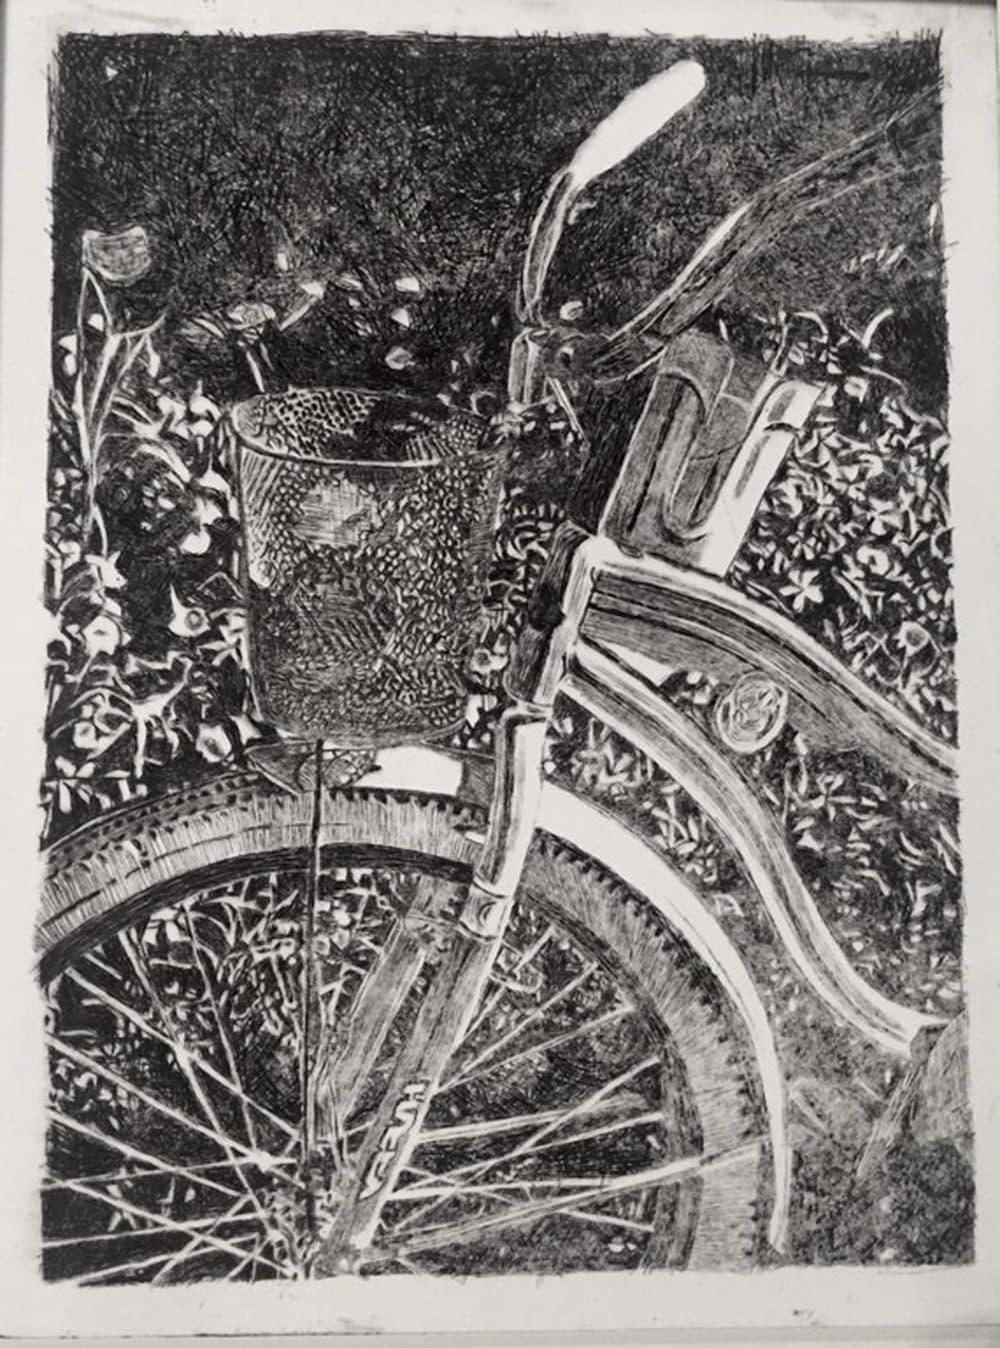 mackinaw island bike rides; drypoint print 8x12in (u/leahmarie315)